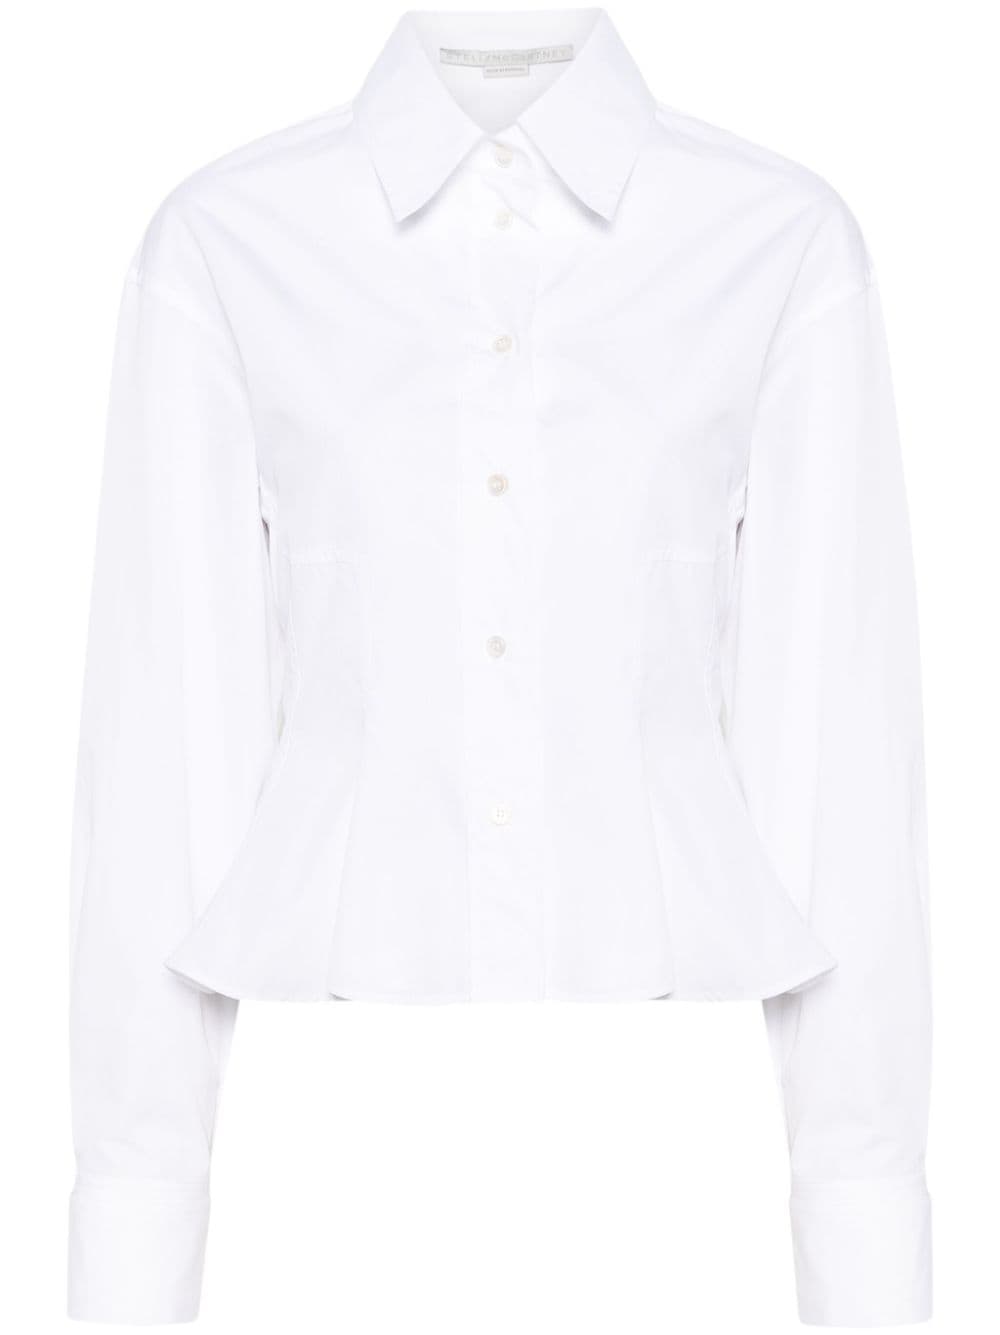 Peplum waist white shirt